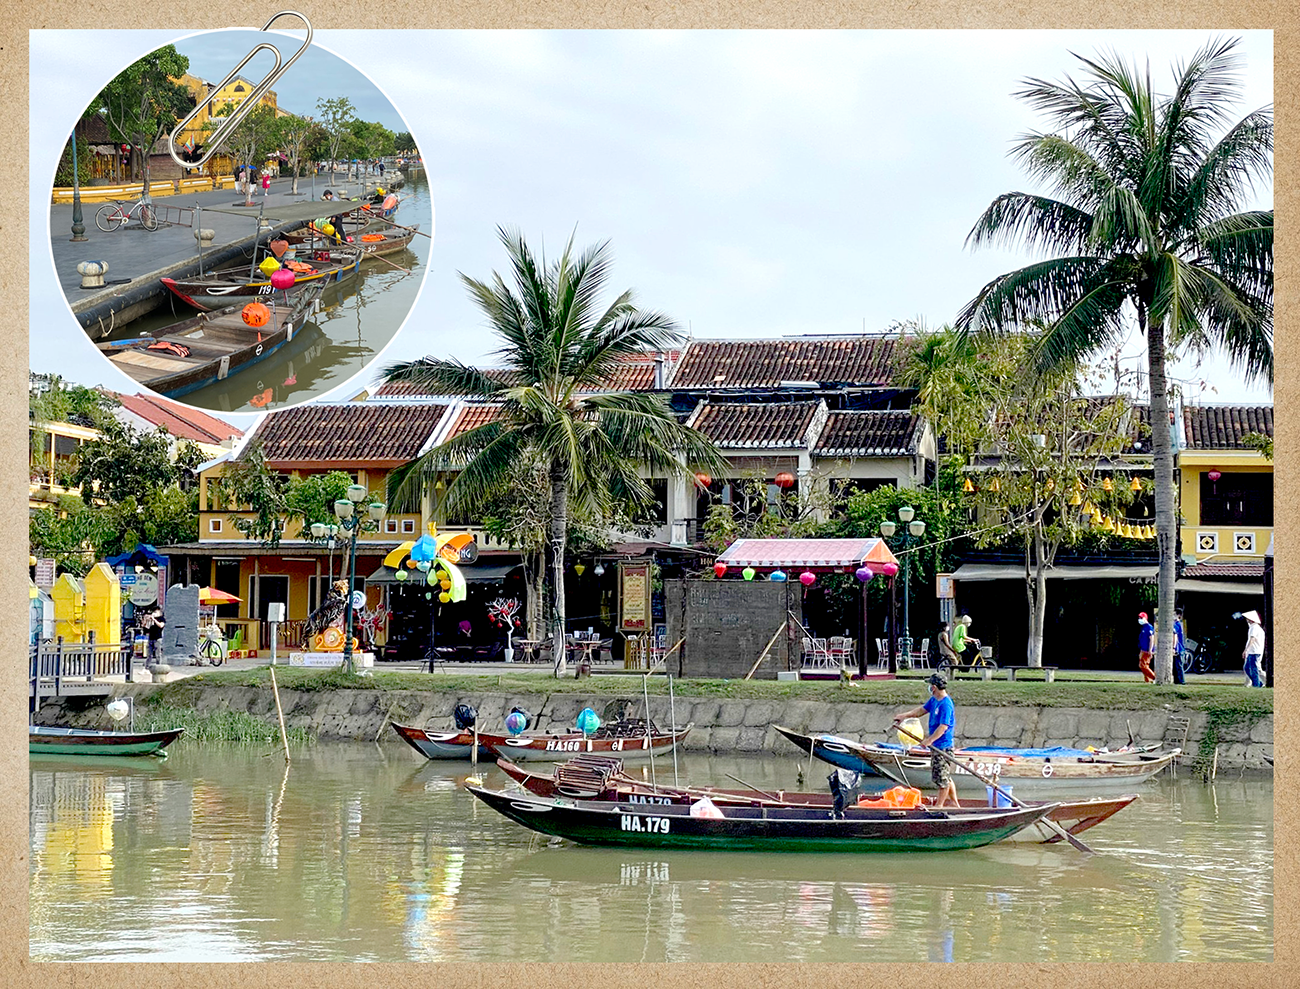 Tại Hội An nhiều ghe thuyền nhỏ tham gia đưa đón khách tham quan, thả hoa đăng trên sông Hoài.